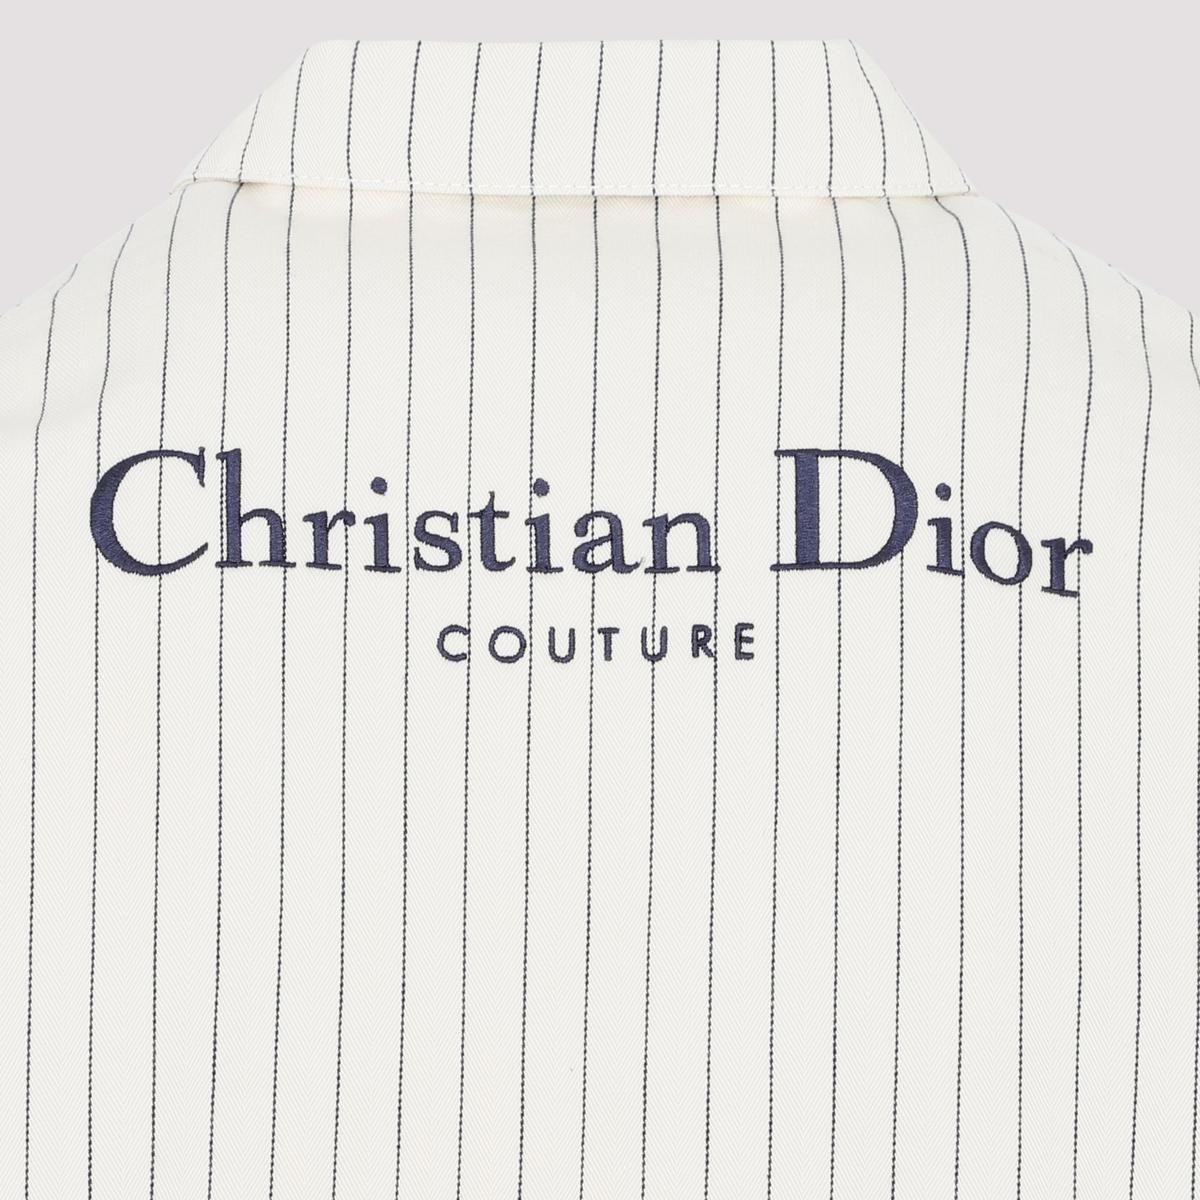 DIOR LOGO Câu chuyện về chiến lược thương hiệu mang tính biểu tượng của  Christian Dior